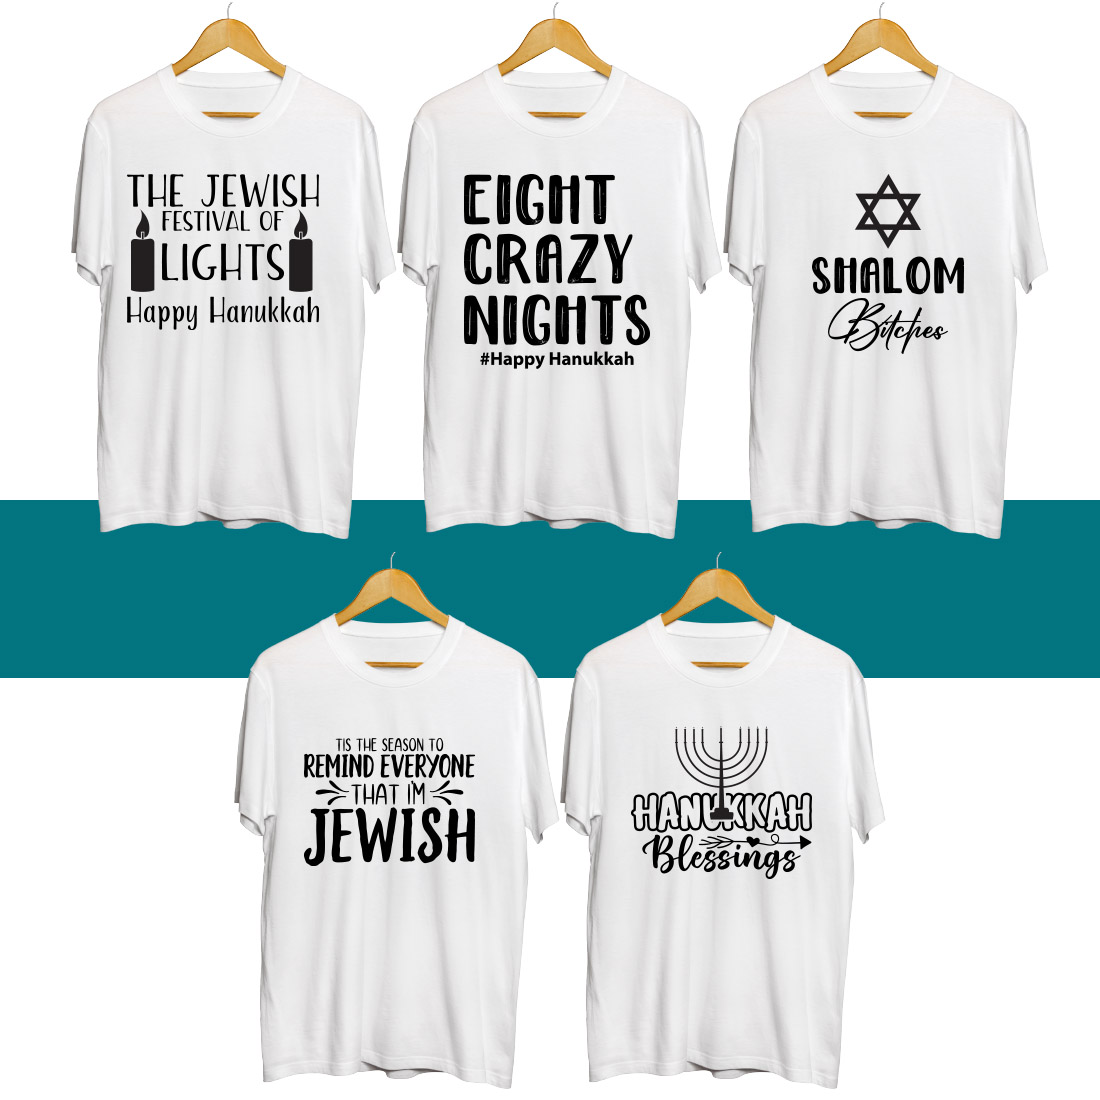 Hanukkah SVG T Shirt Designs Bundle preview image.